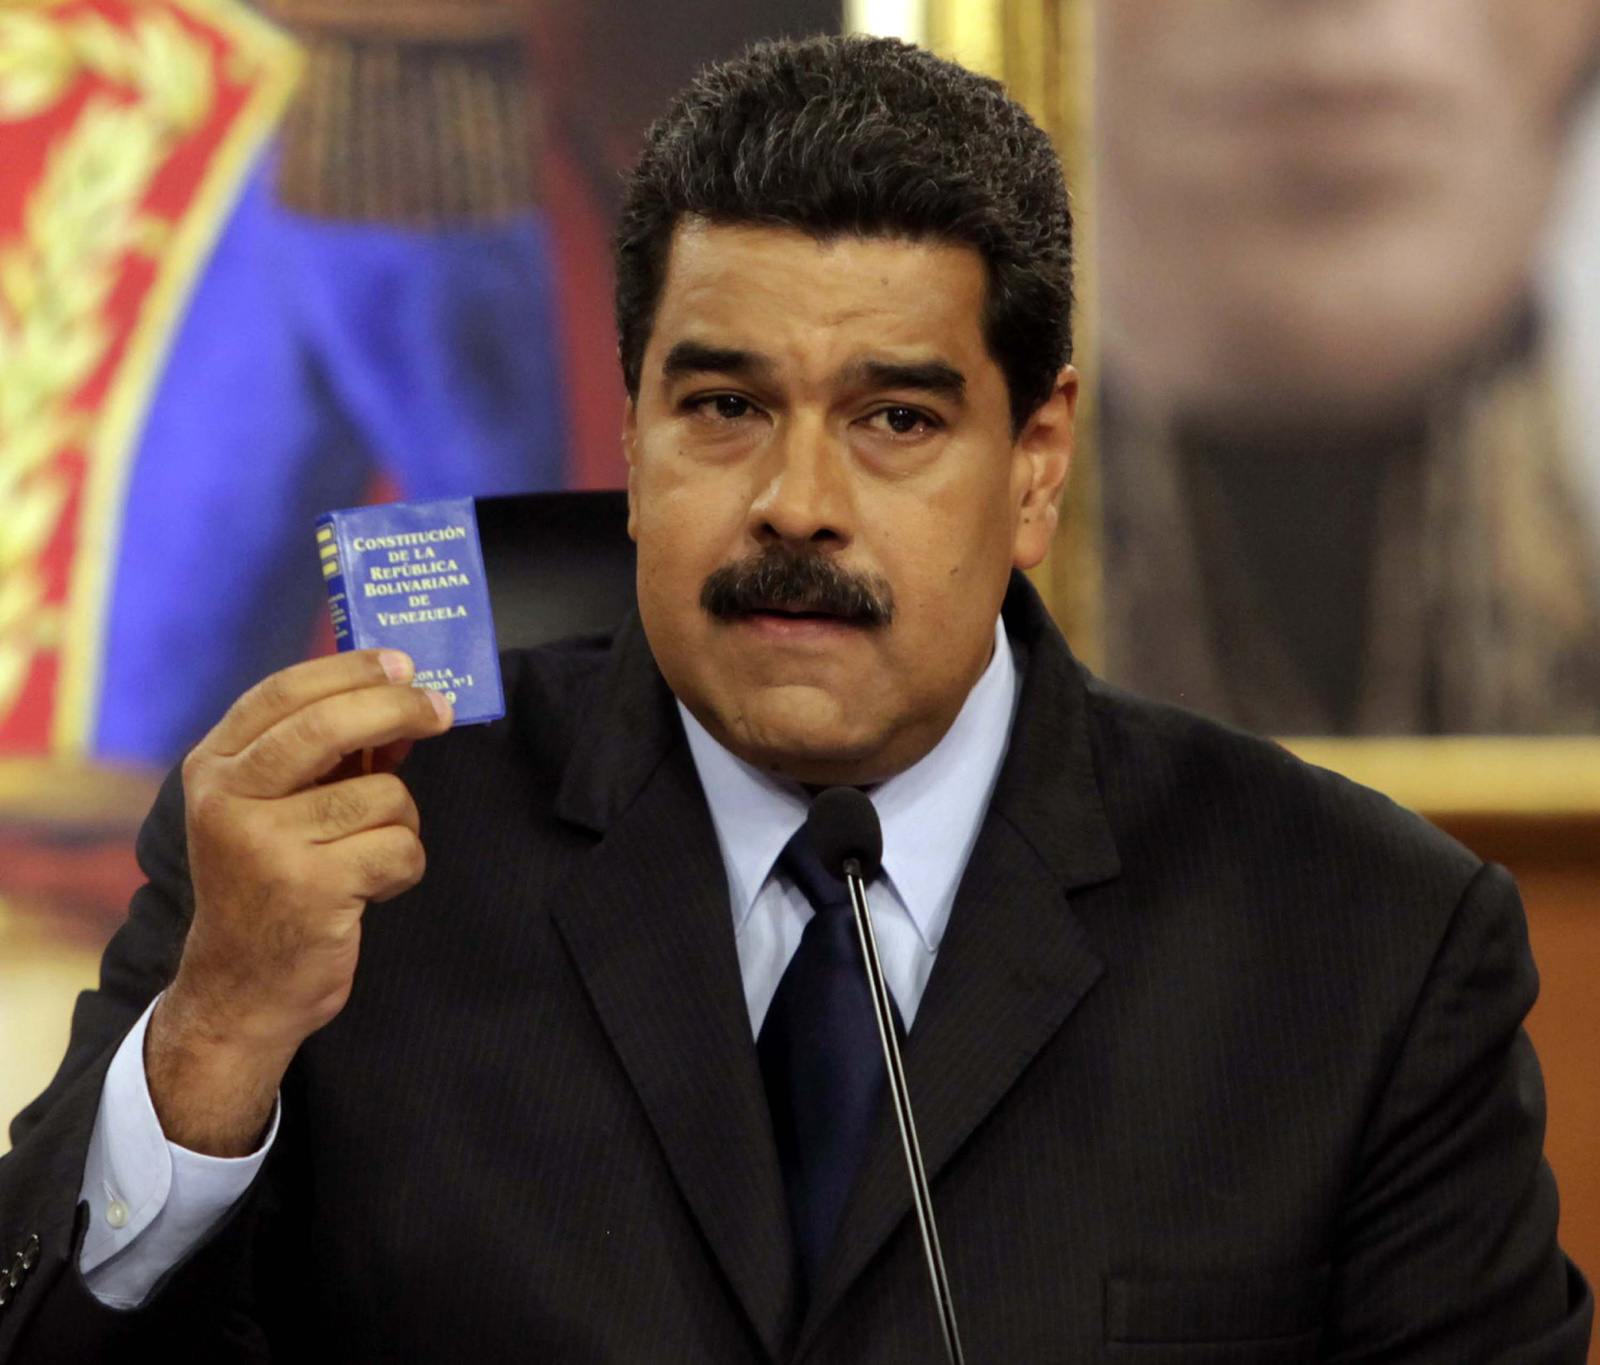 Critica. Nicolás Maduro se lanzó en contra de los proyectos de derecha neoliberales en América Latina. (EFE)